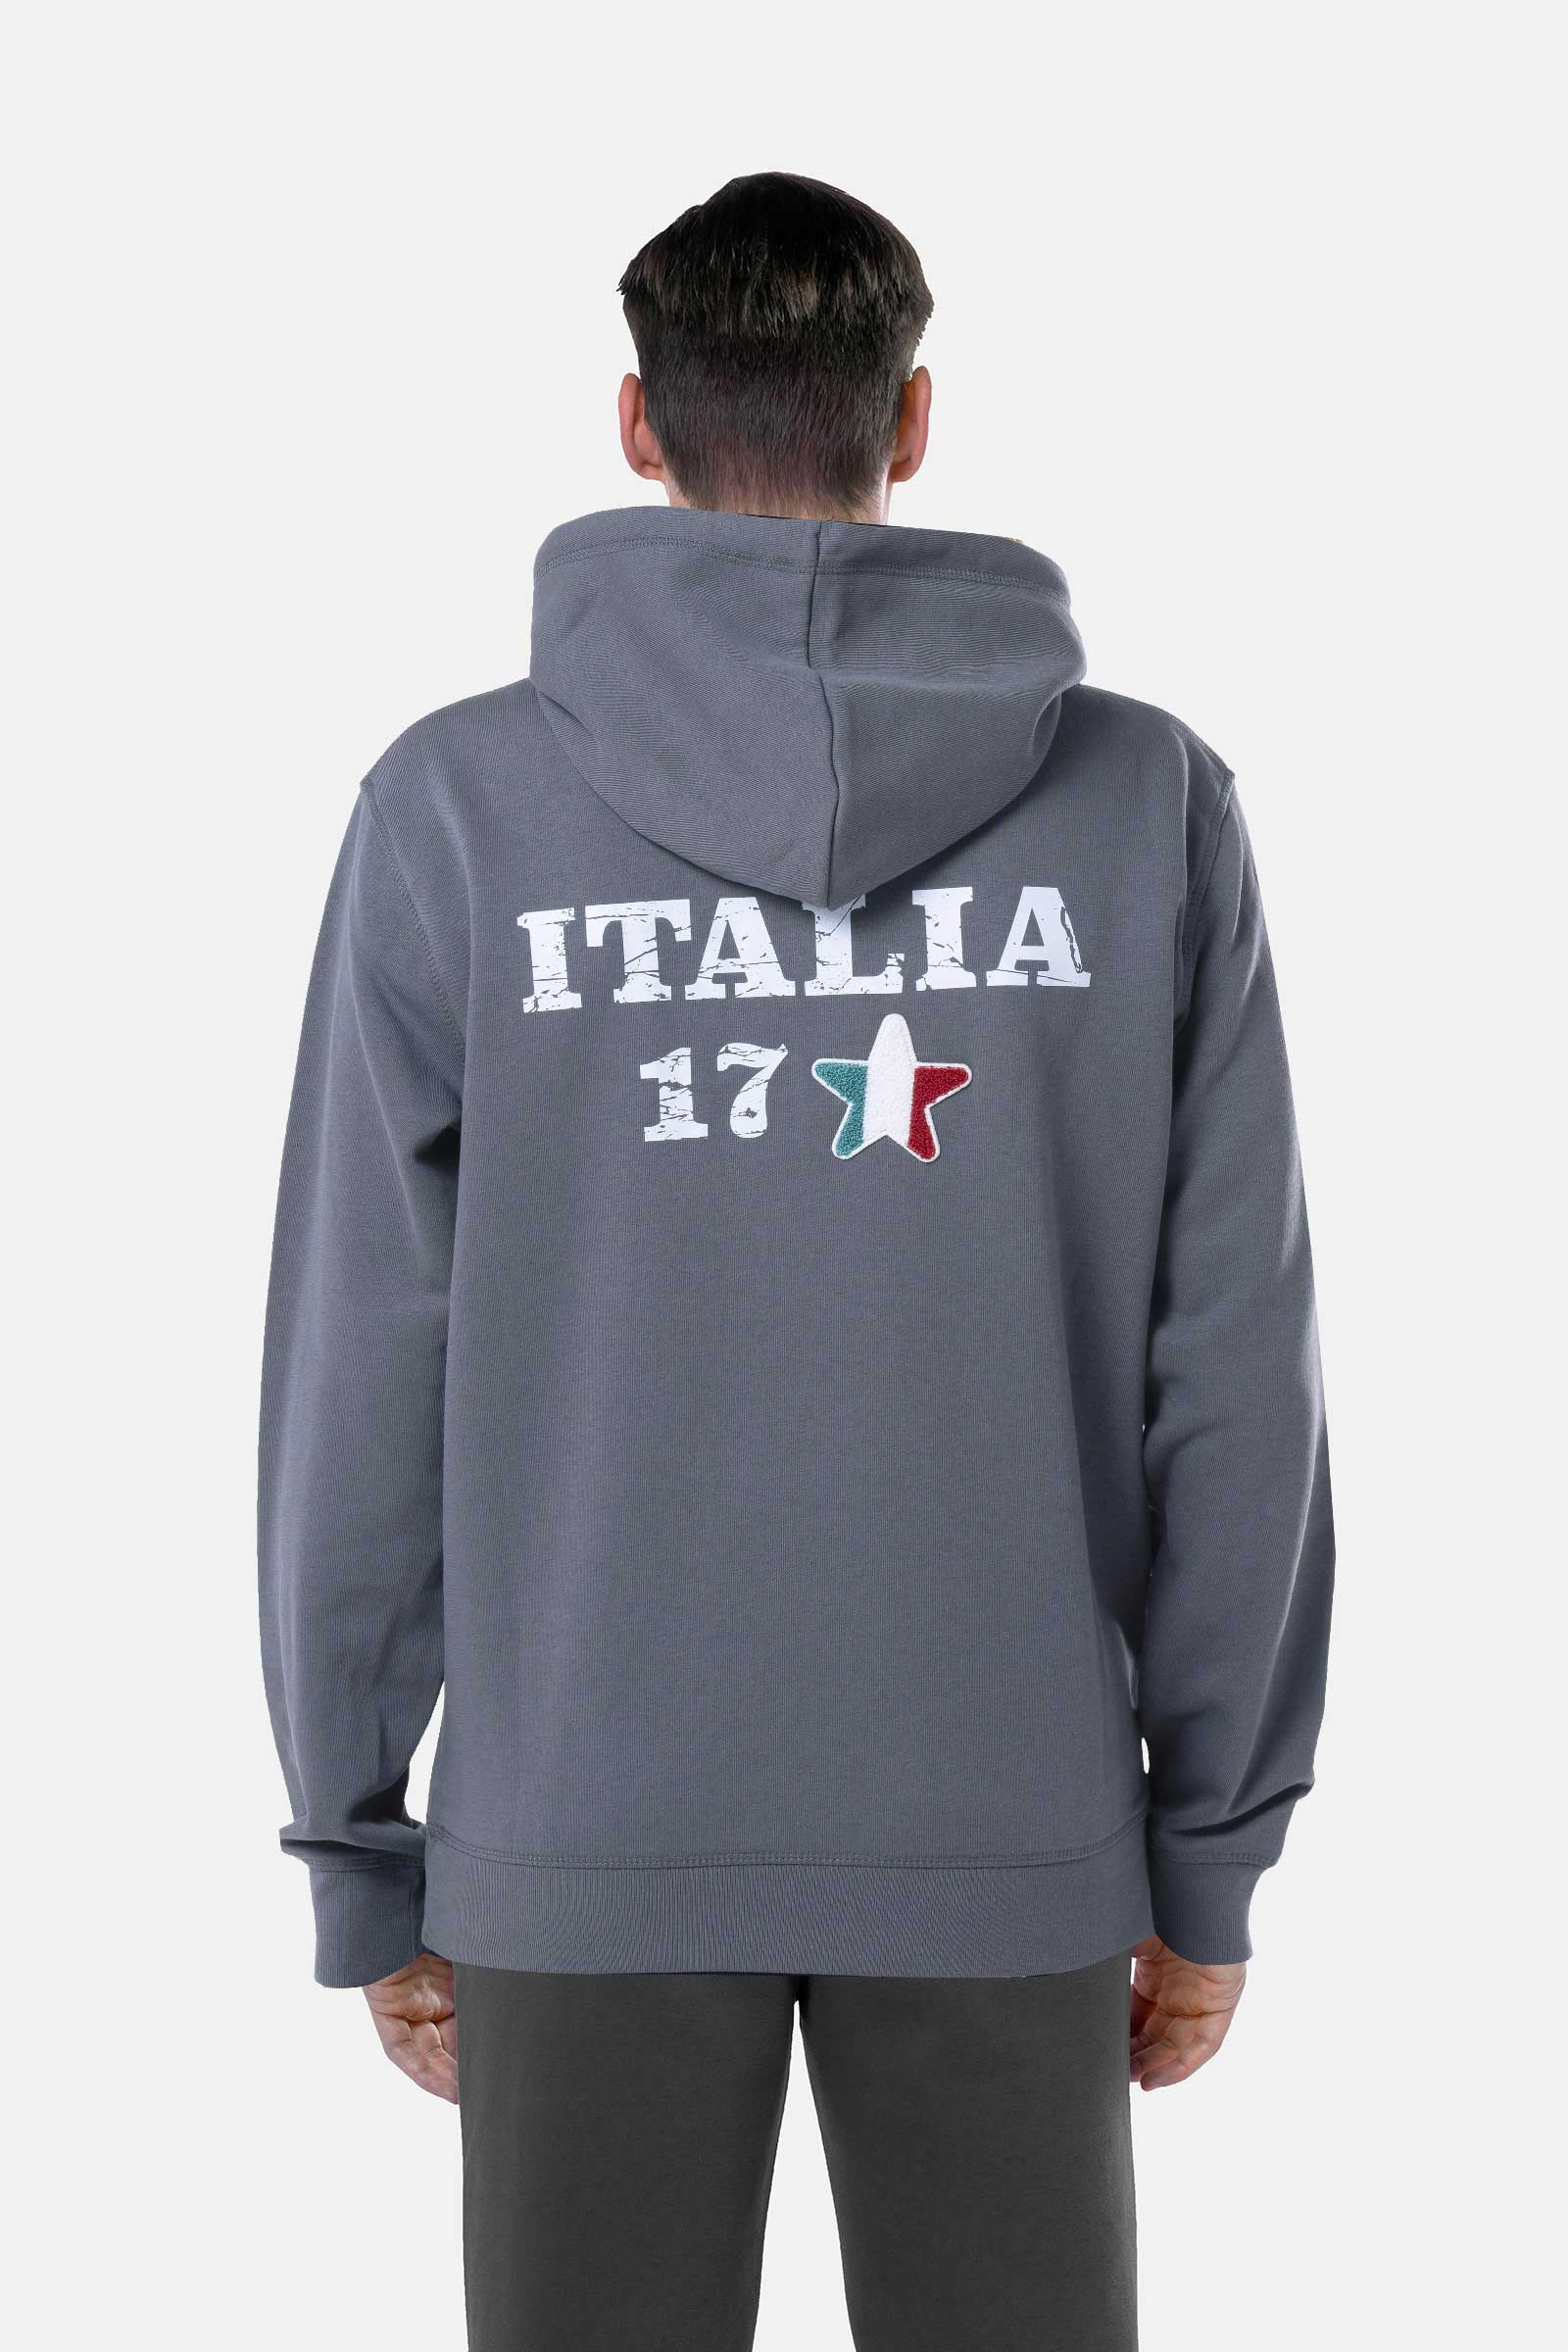 ITALIA 17 HOODIE - GREY - Hydrogen - Luxury Sportwear